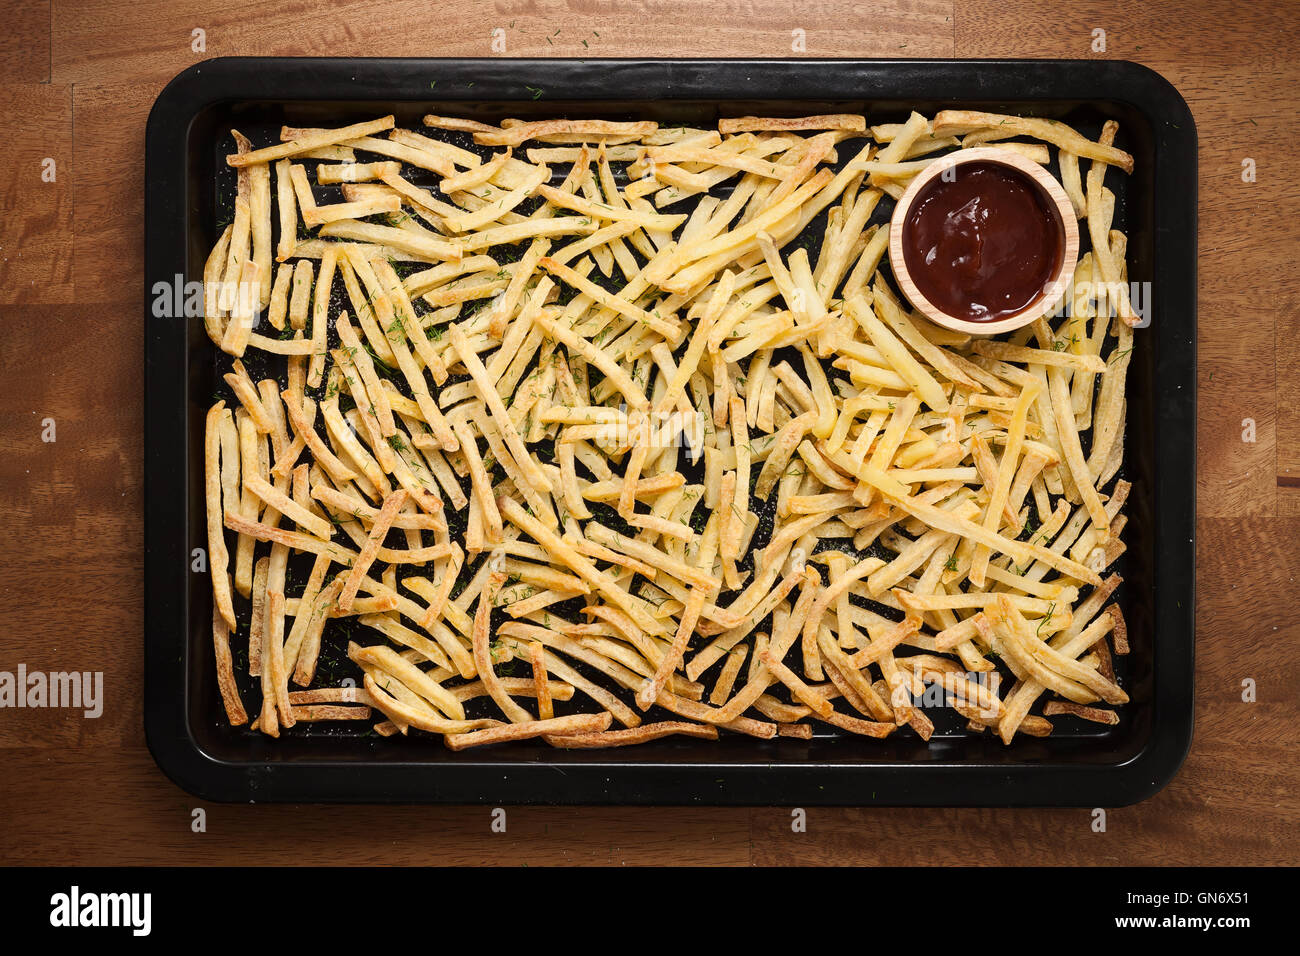 Fries ketchup francese ancora vita piatta aneto laici sale alle erbe aromatiche junk un fast food Sfondo legno Foto Stock